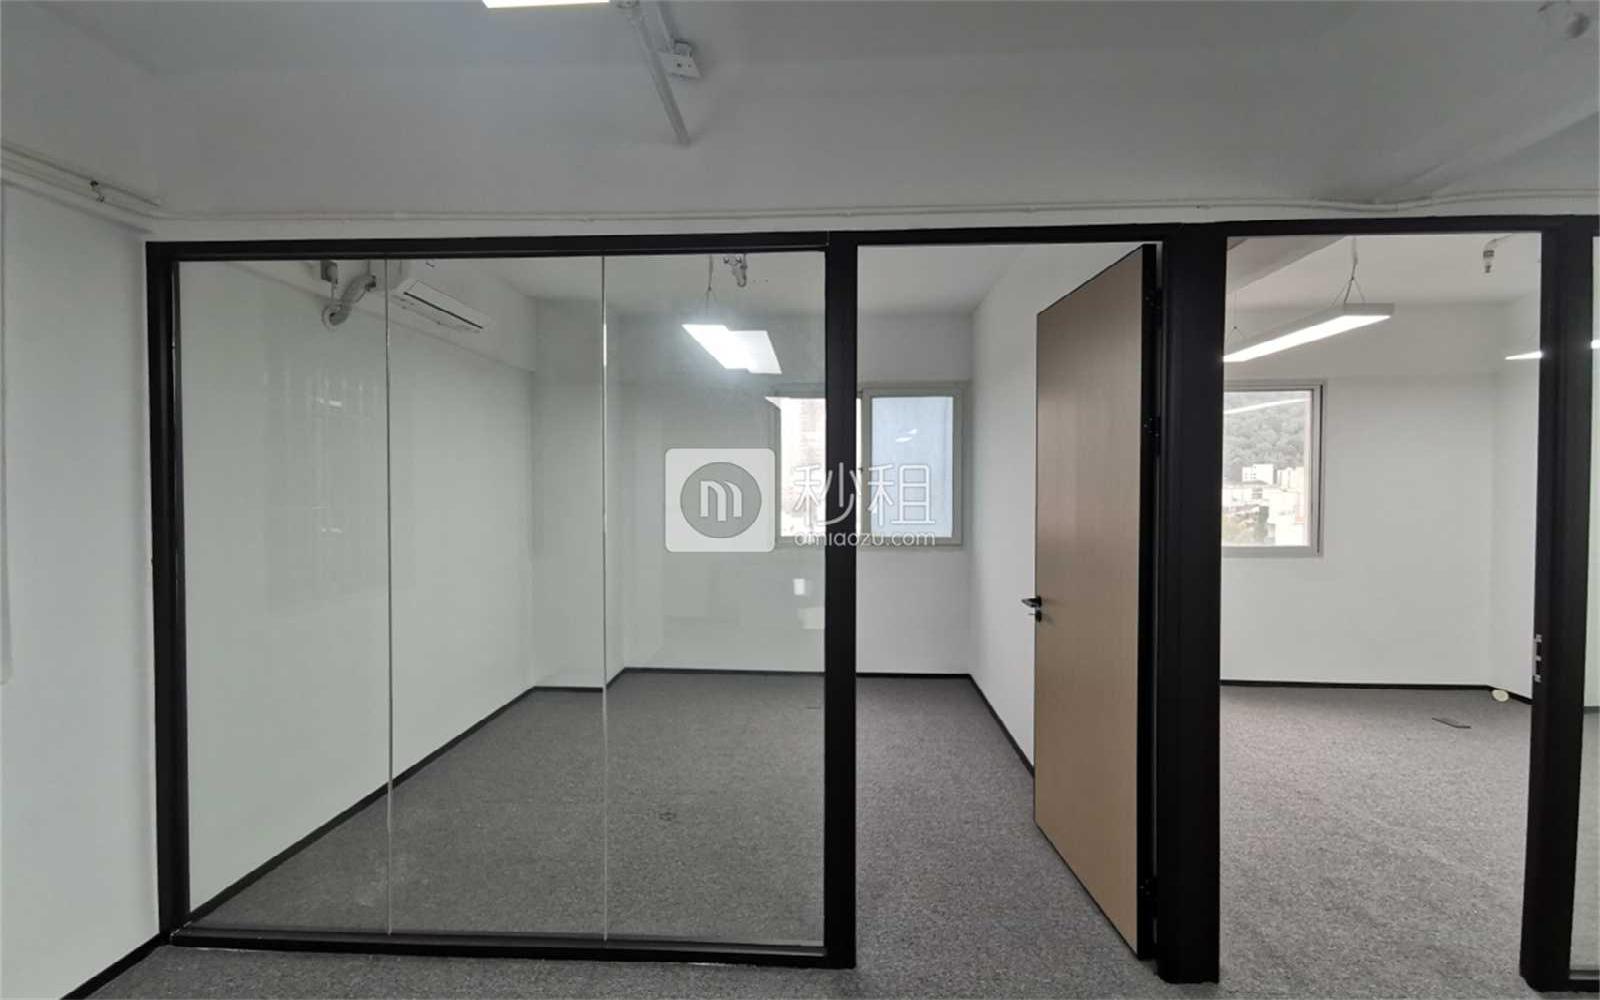 天乐大厦写字楼出租140平米精装办公室70元/m².月